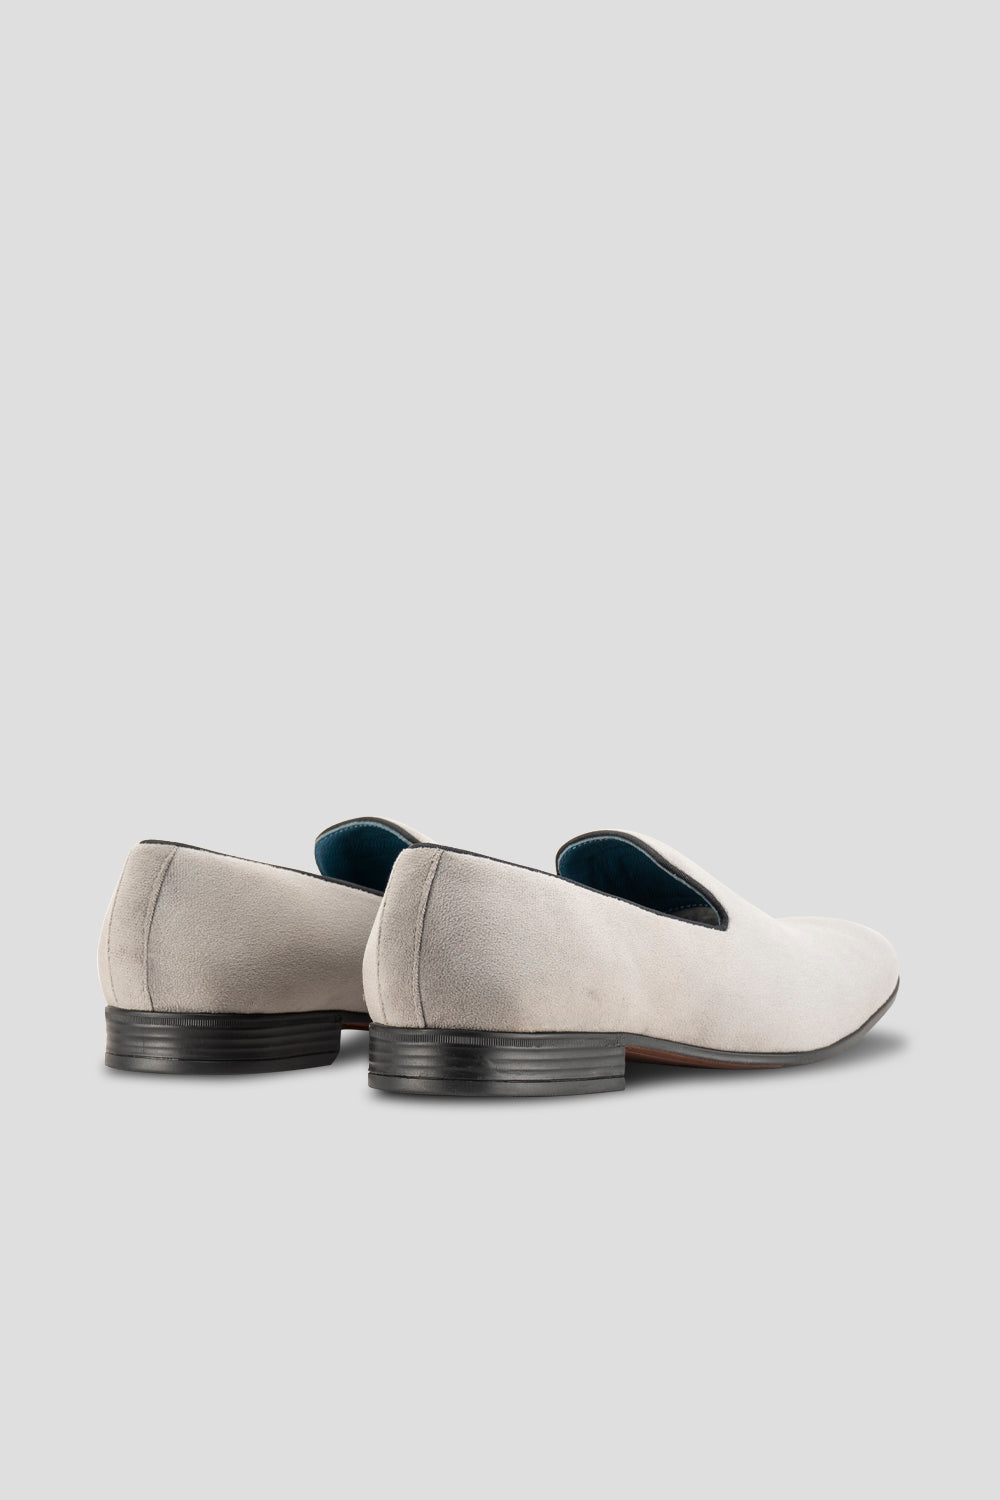 Alfie Grey velvet slippers loafer